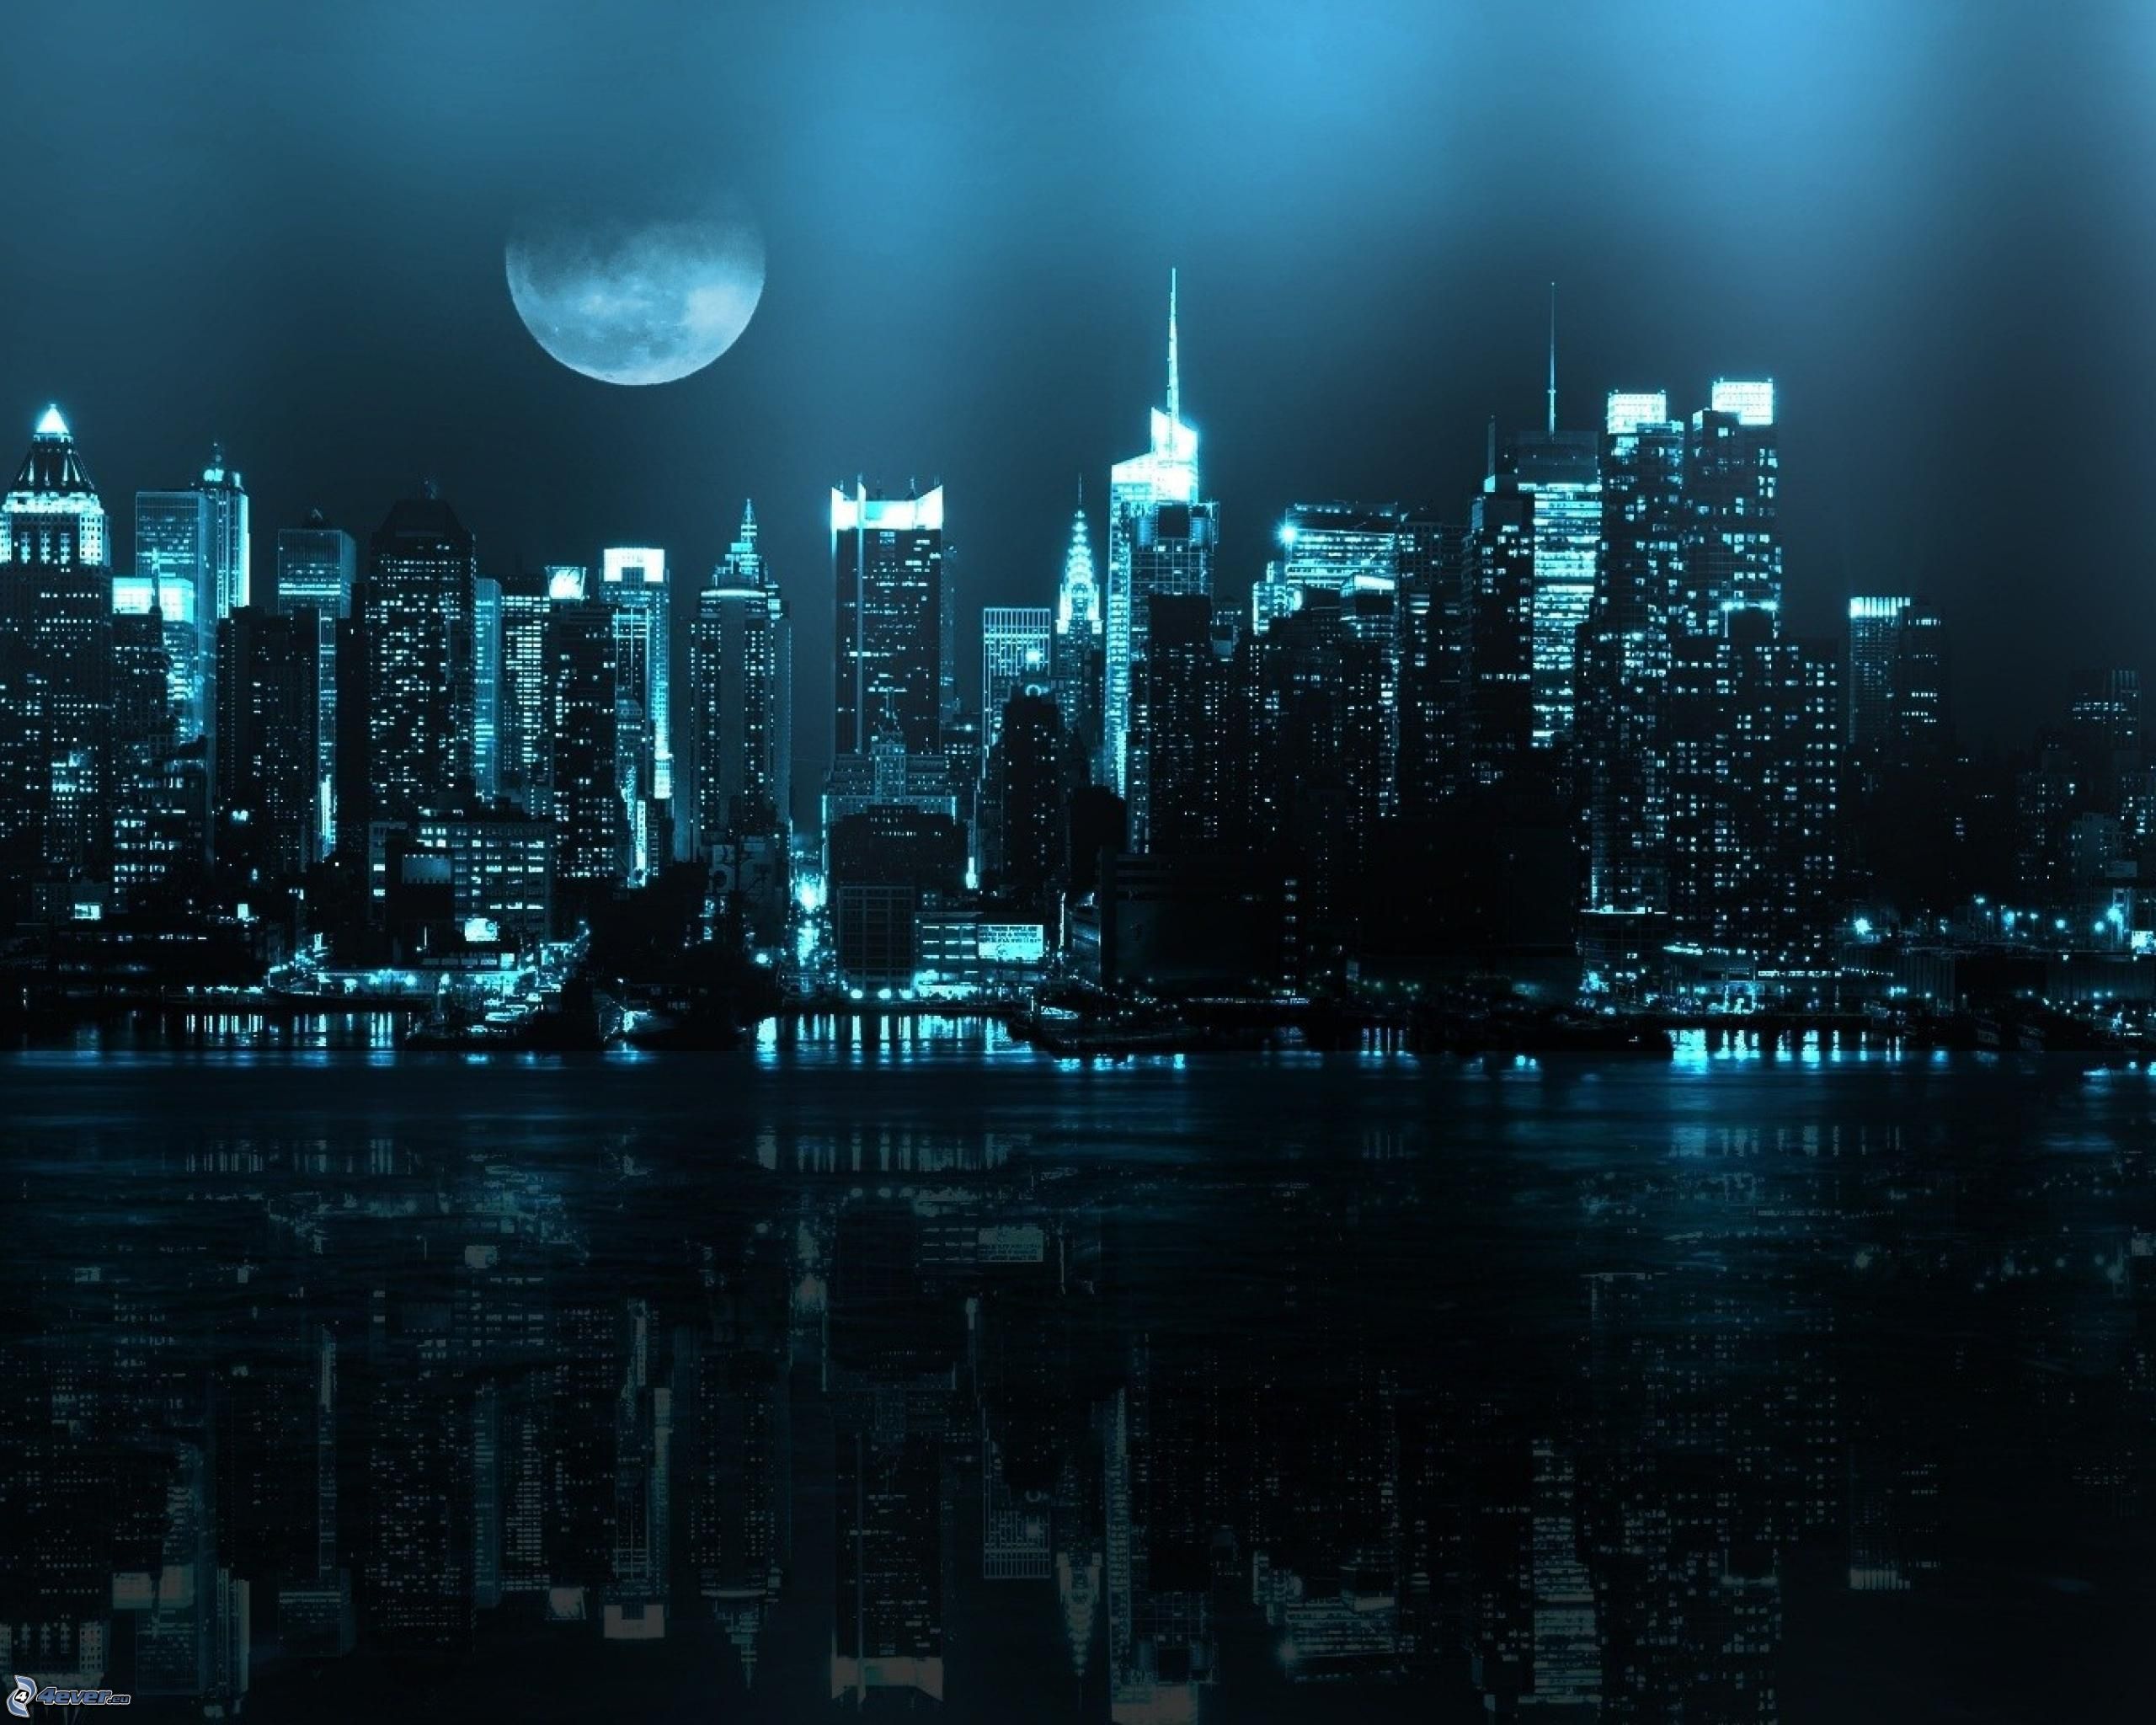 Fondos de pantalla de ciudad de noche - FondosMil